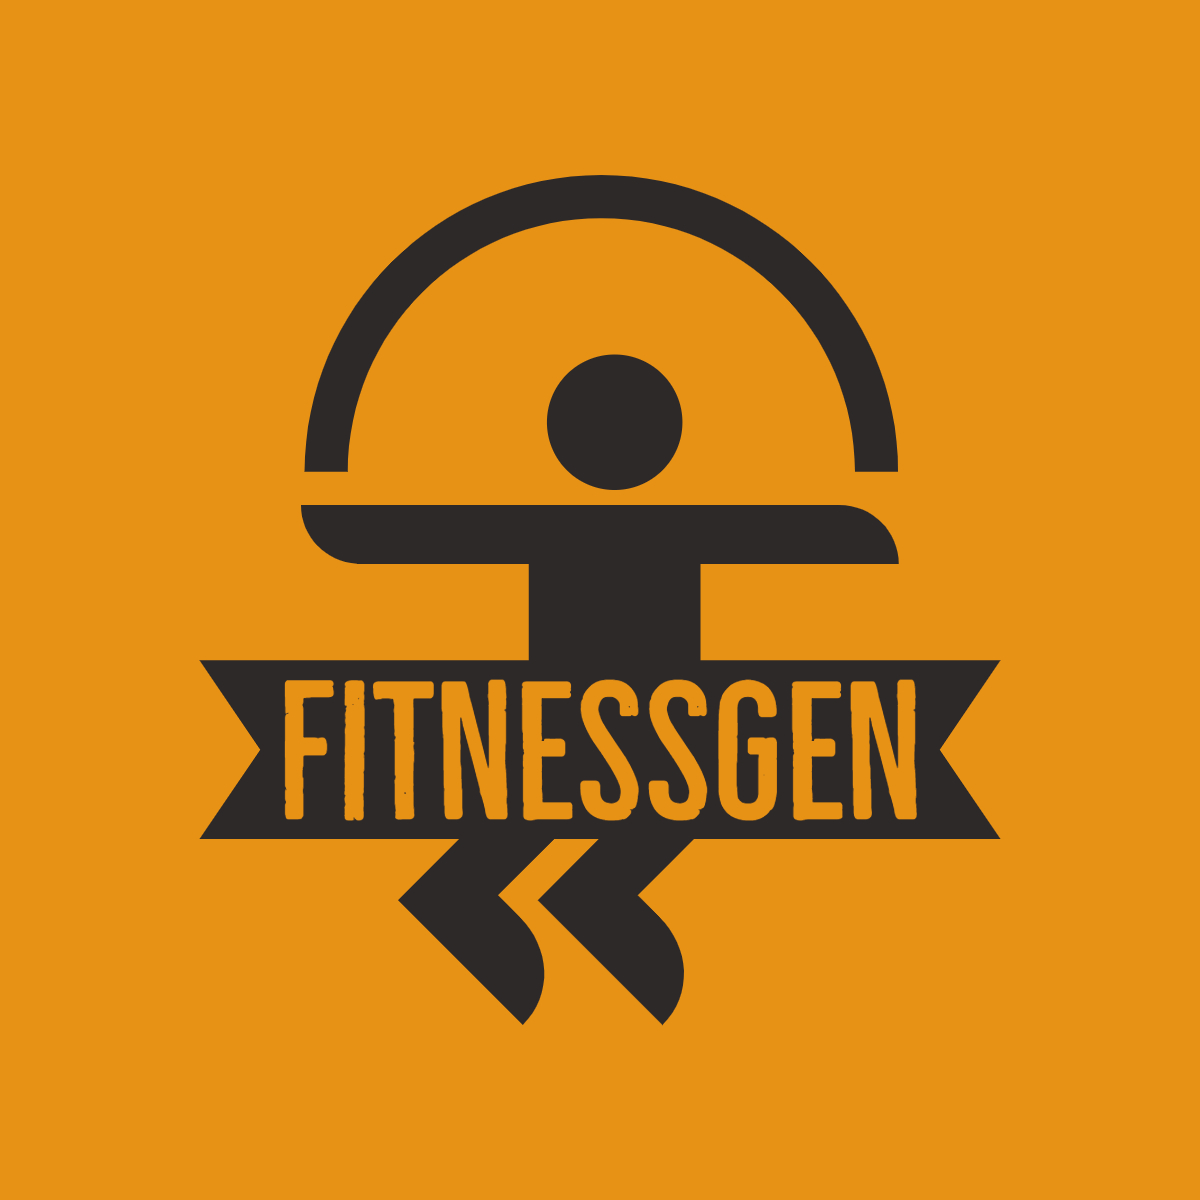 FitnessGen-logos.jpeg